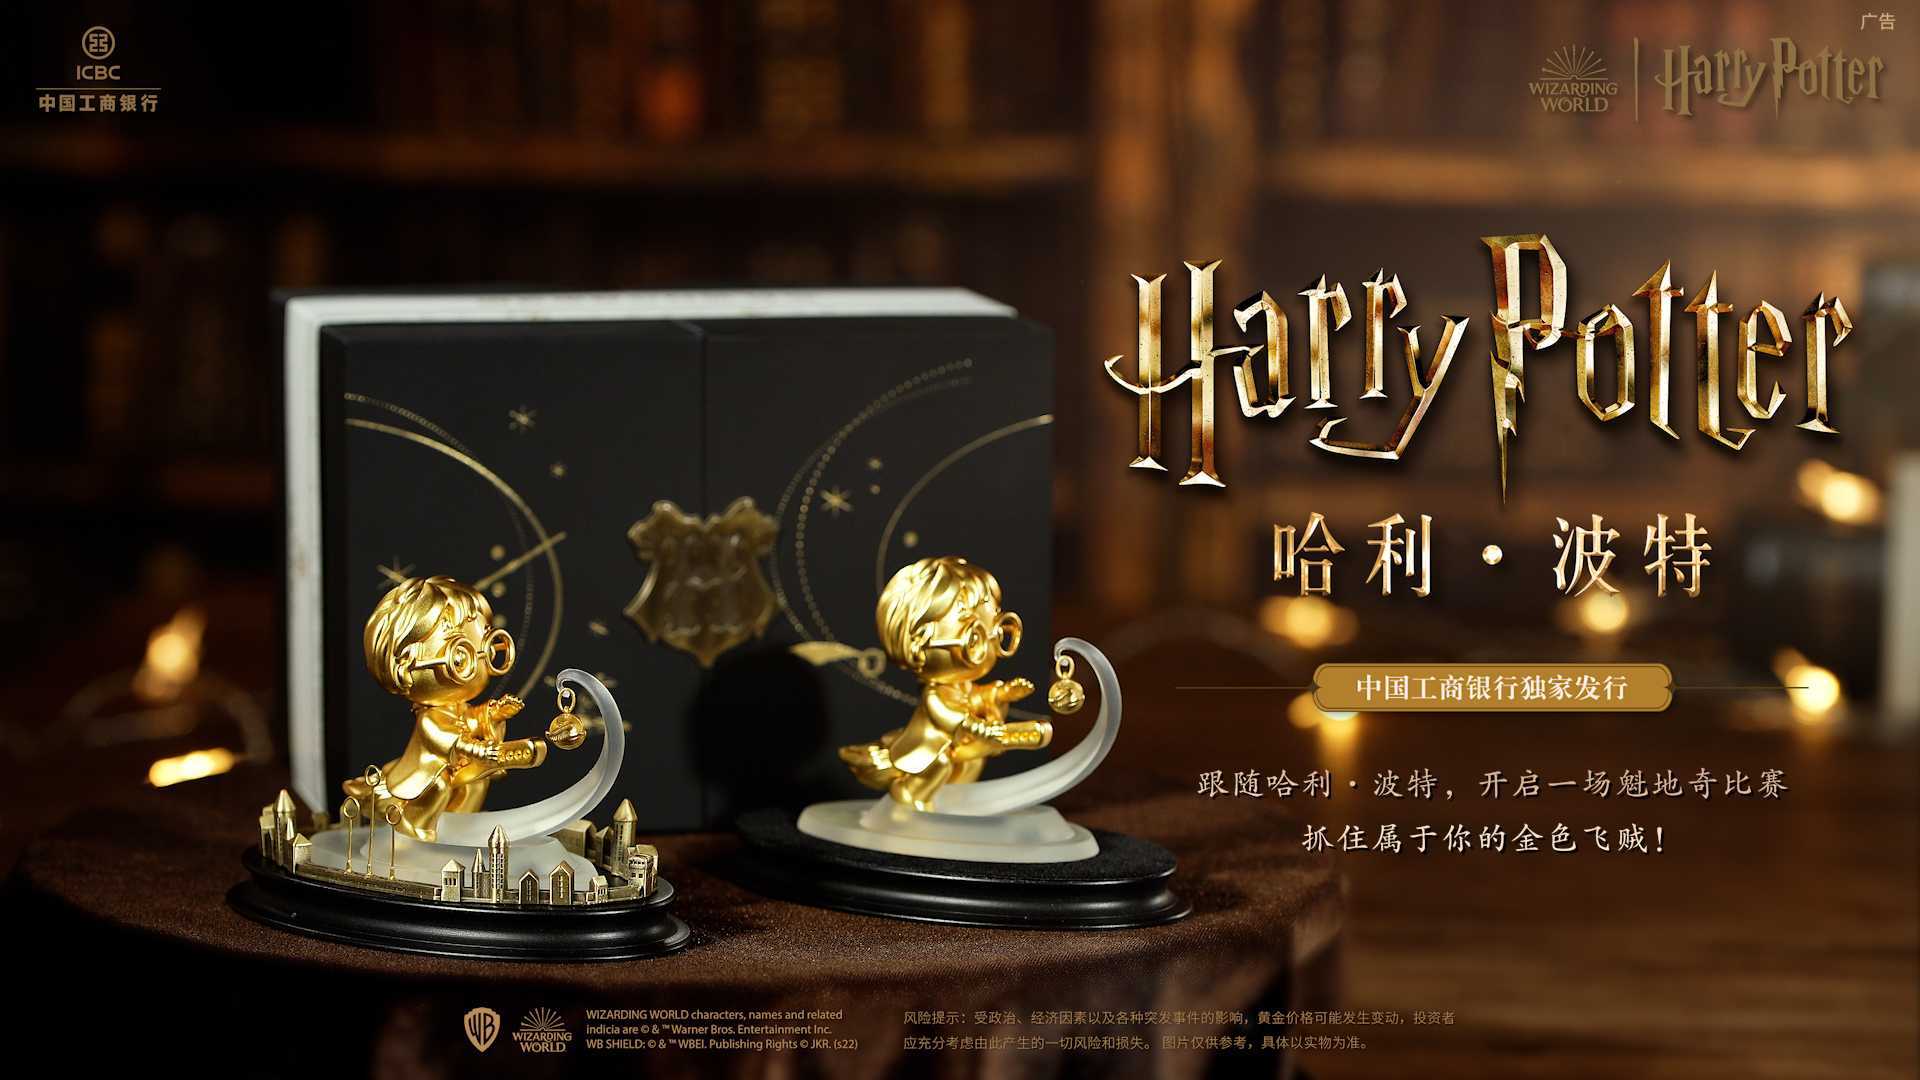 中国工商银行《哈利·波特》系列产品